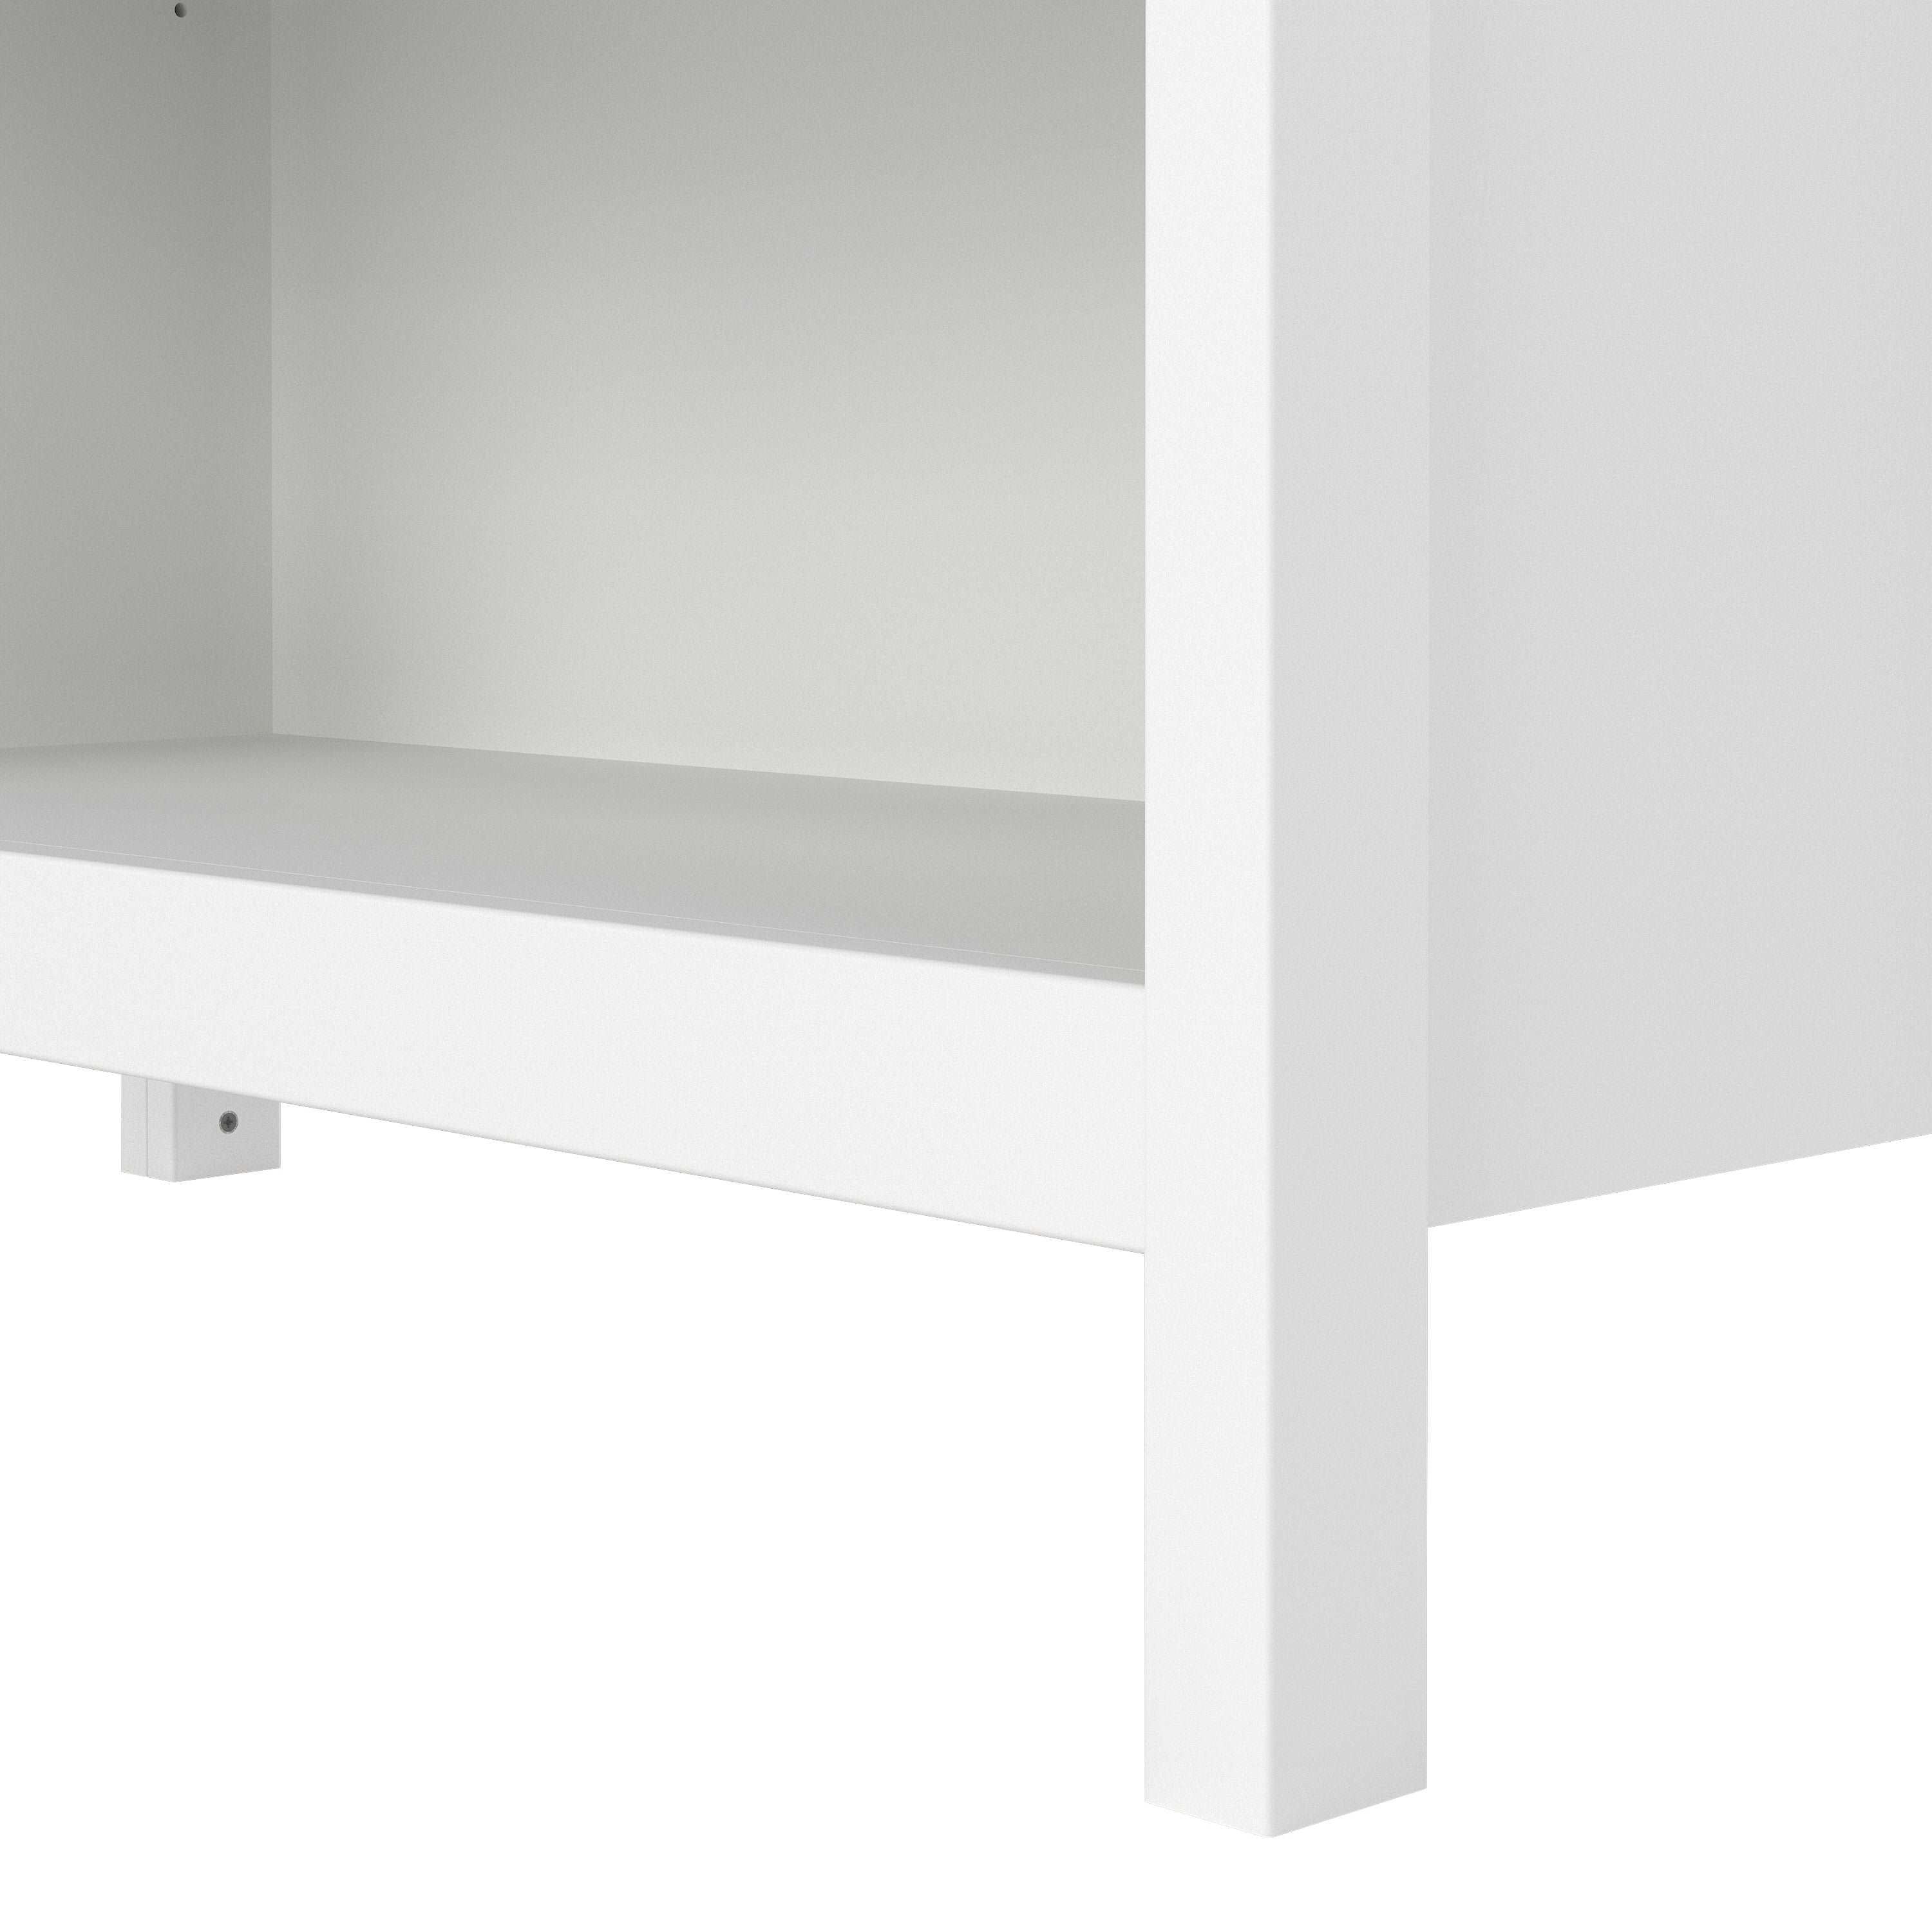 Barcelona Bookcase in White Furniture To Go Ltd